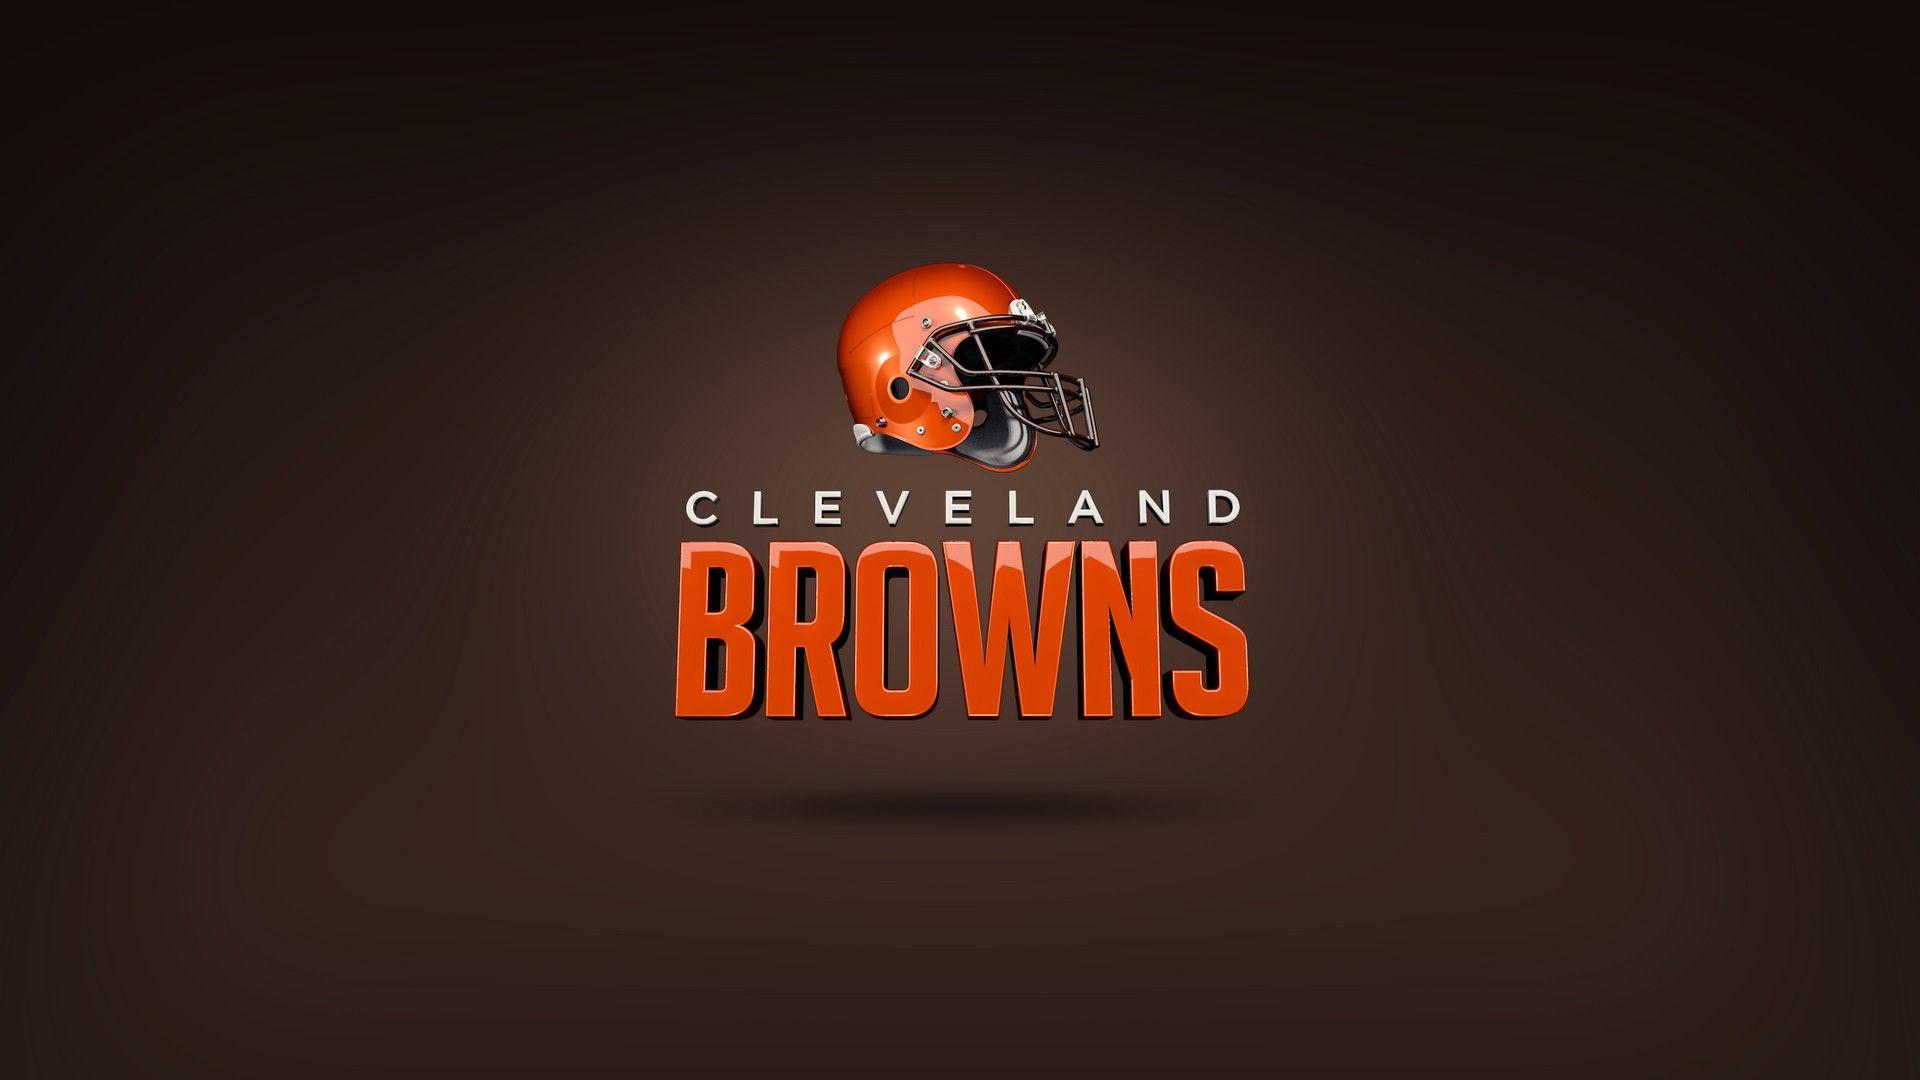 Windows Wallpaper Cleveland Browns NFL Football Wallpaper